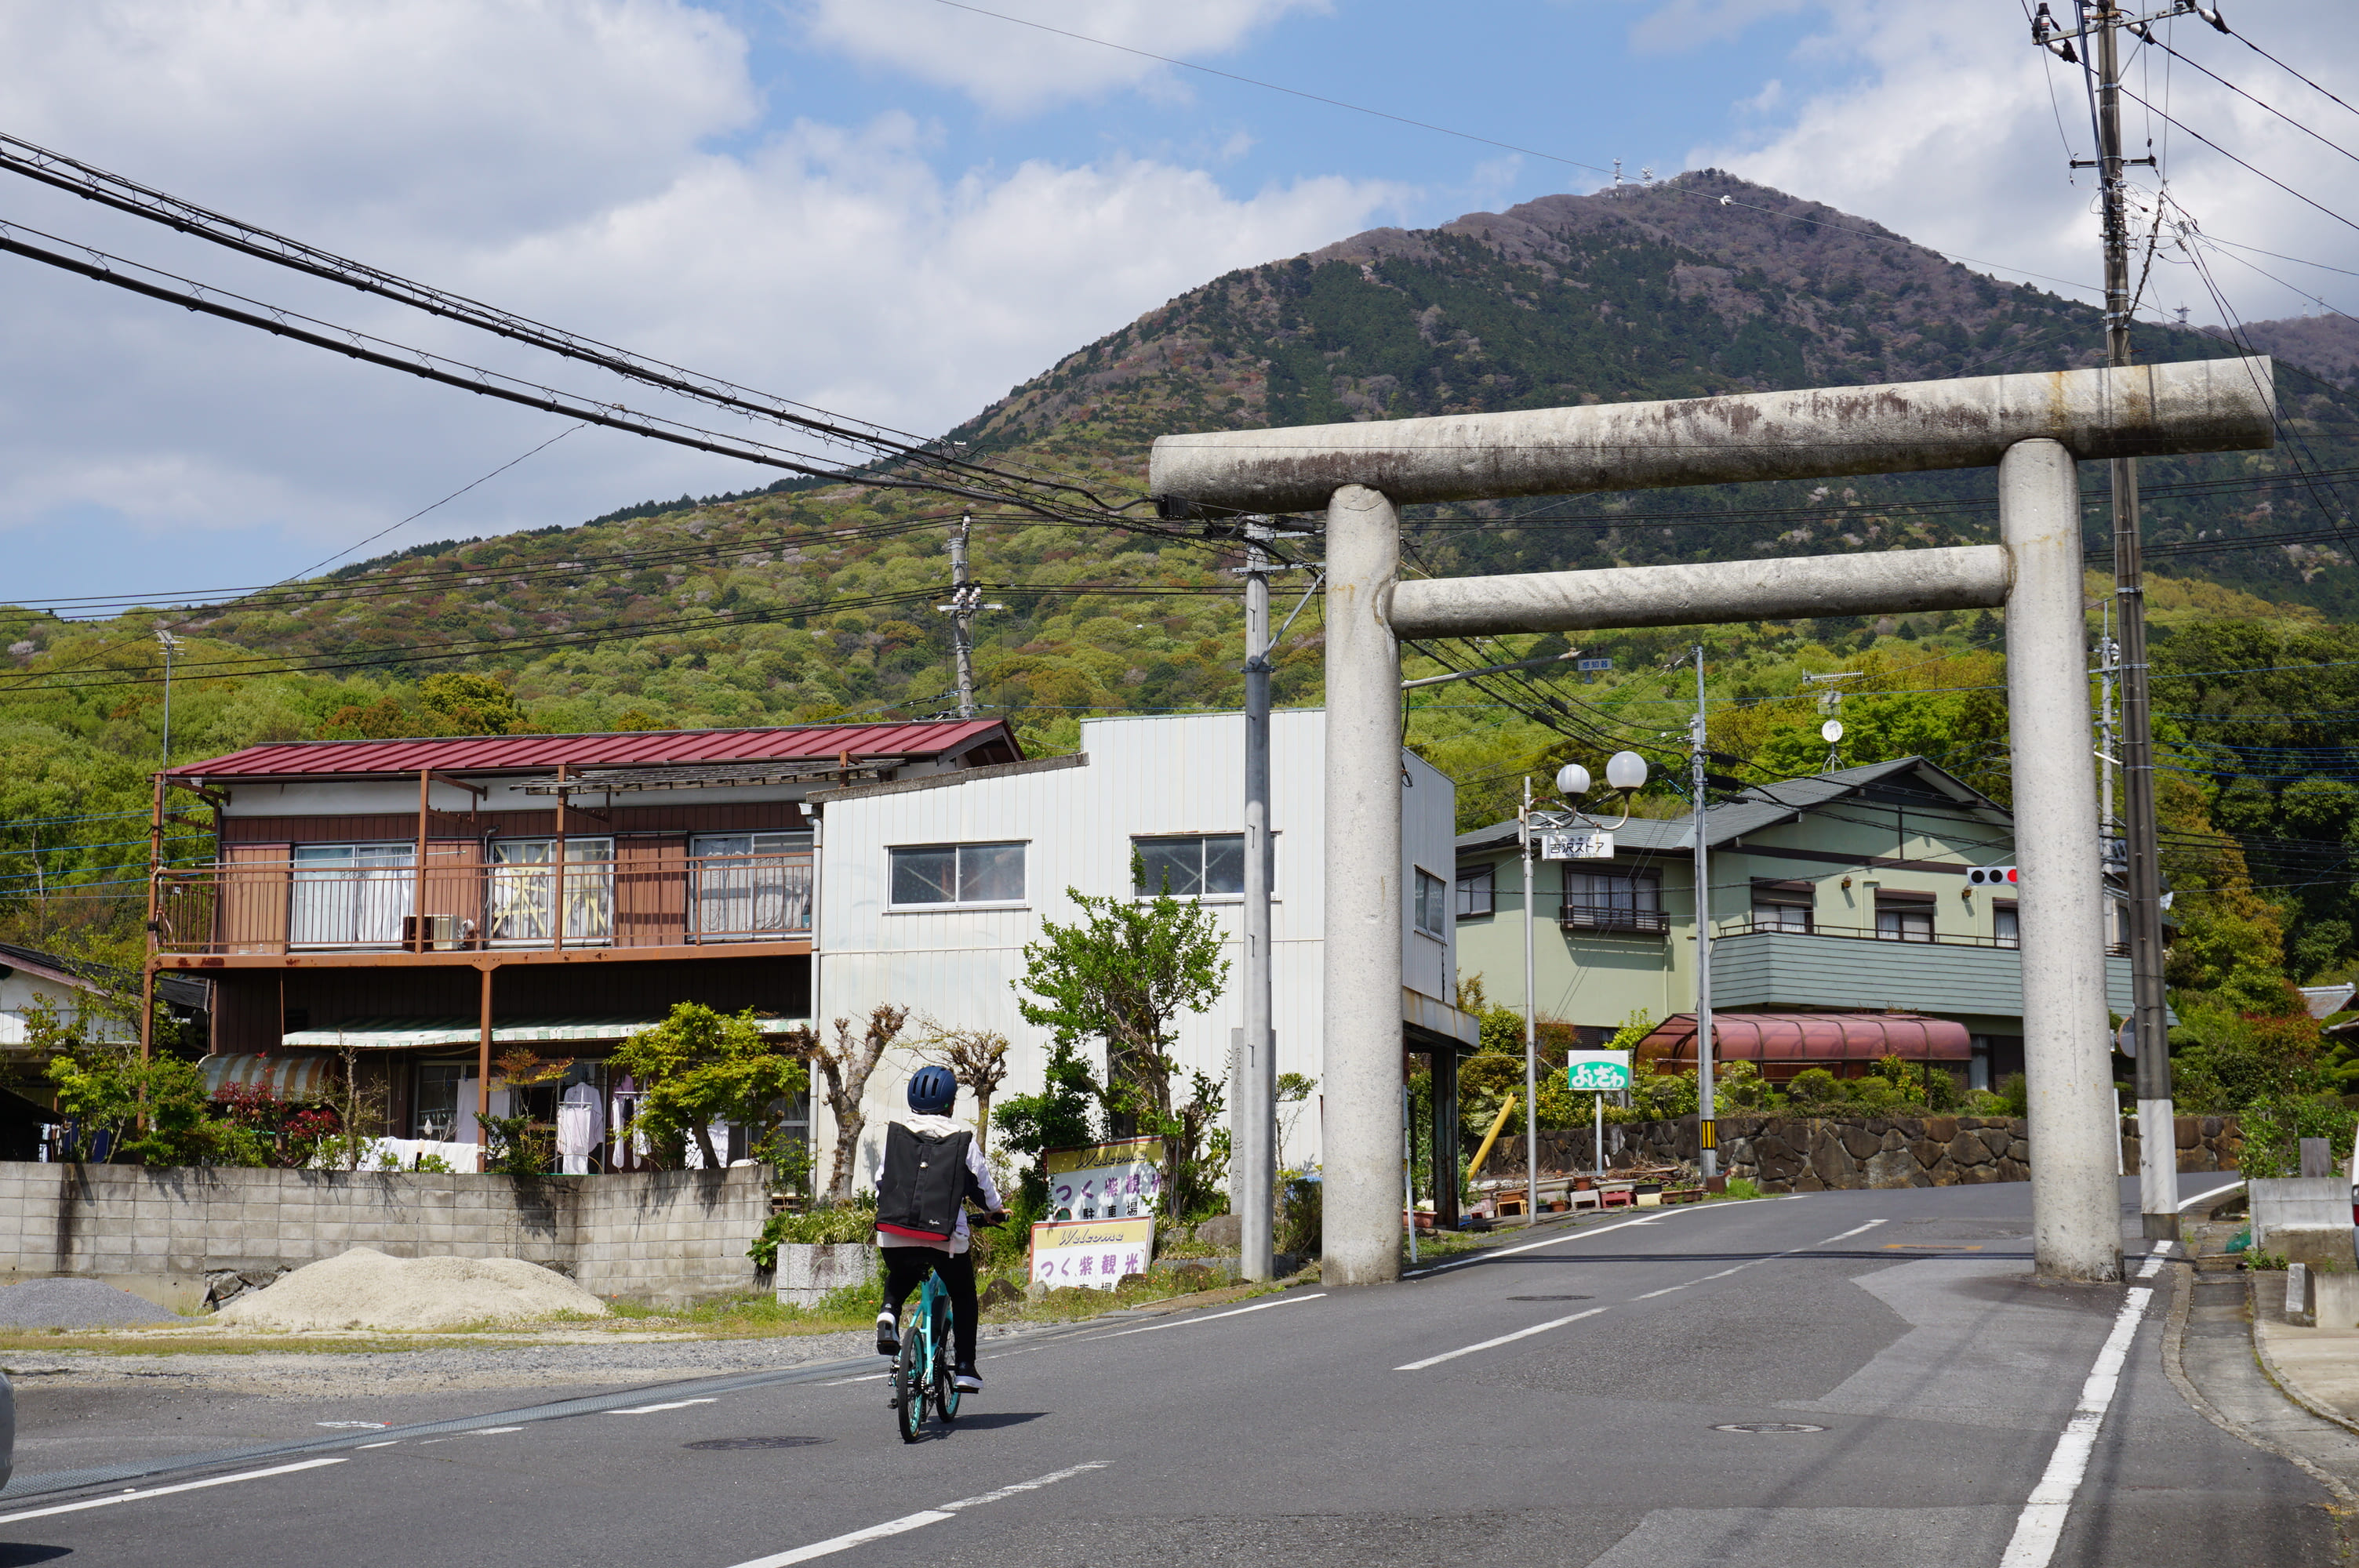 旧筑波駅前からのびる坂道は筑波山神社への参道